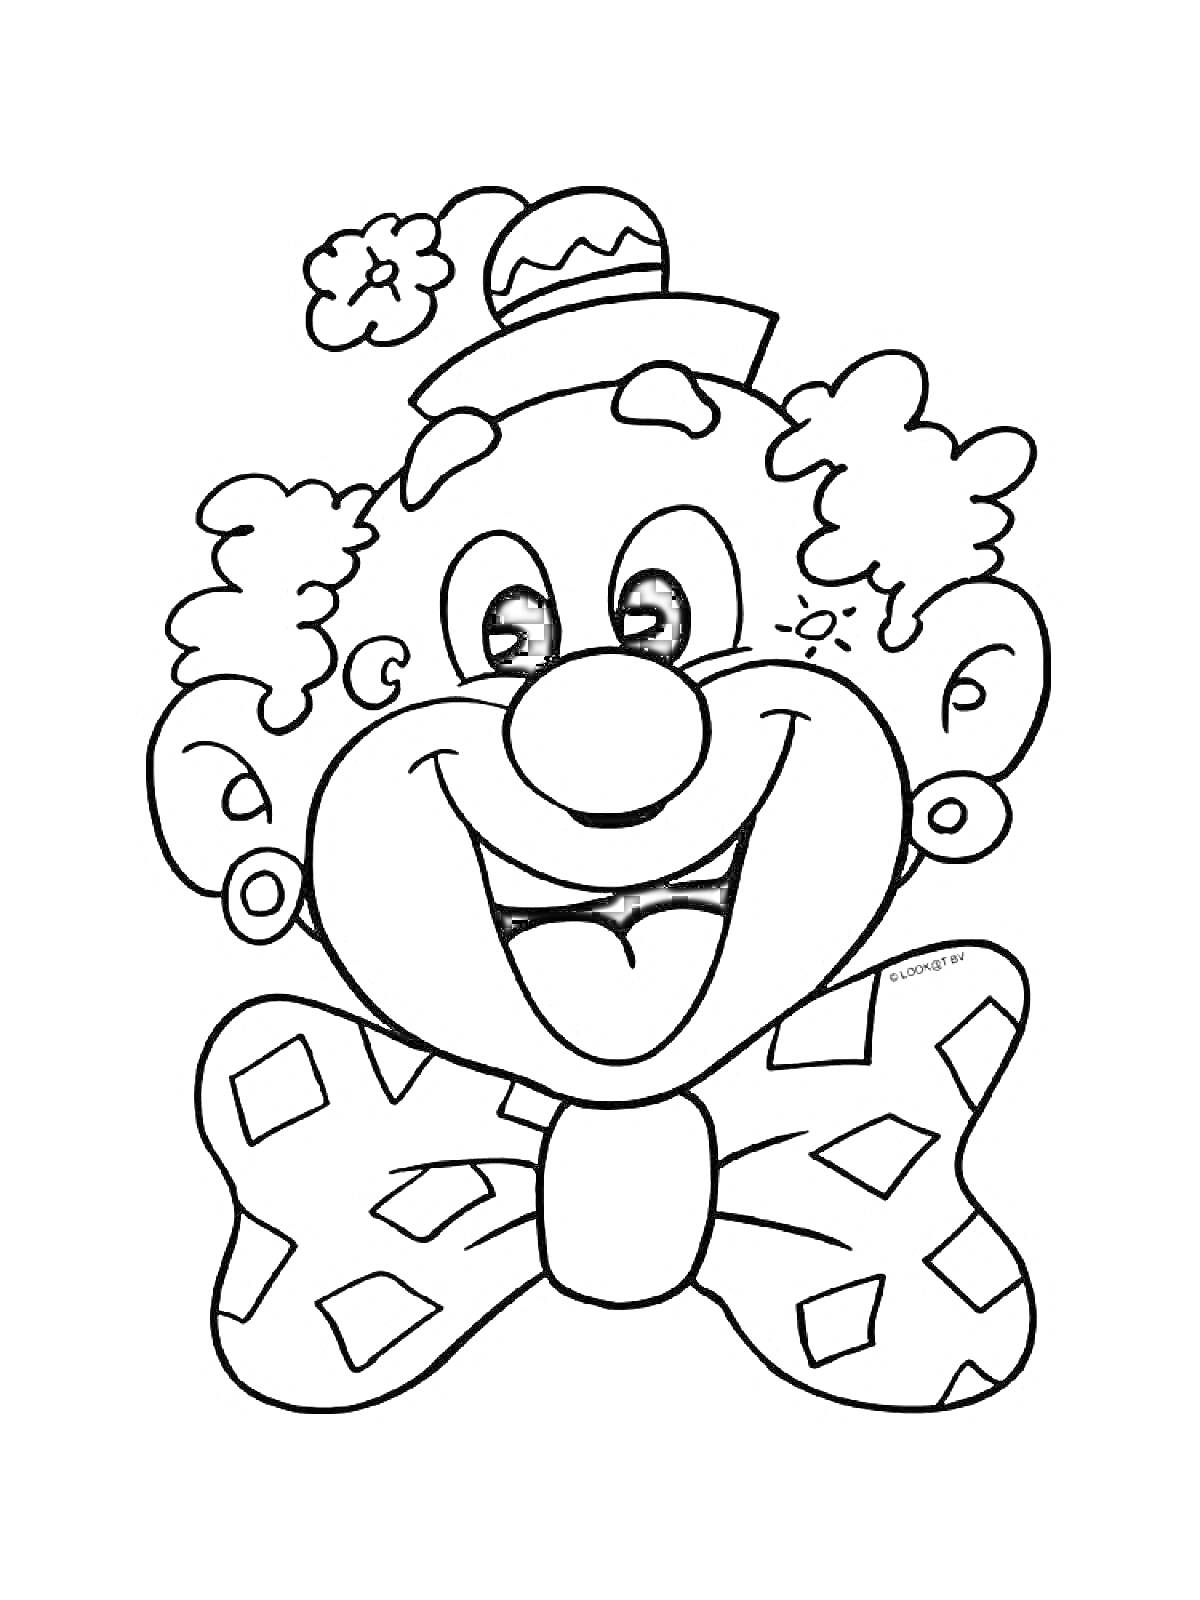 Раскраска Лицо клоуна с большими ушами, шляпой с помпоном и бантом с ромбами